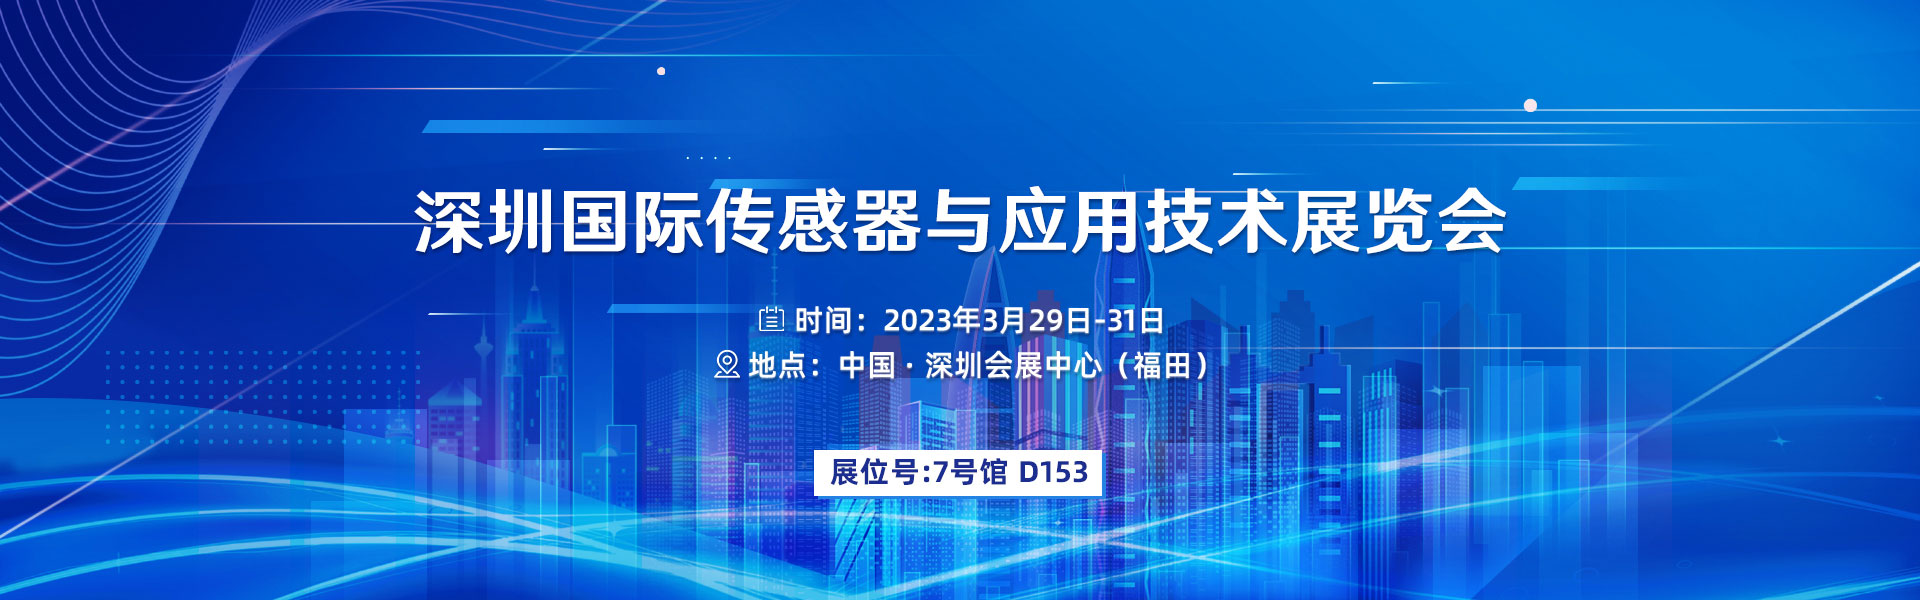 深圳國際傳感器與應用技術展覽會